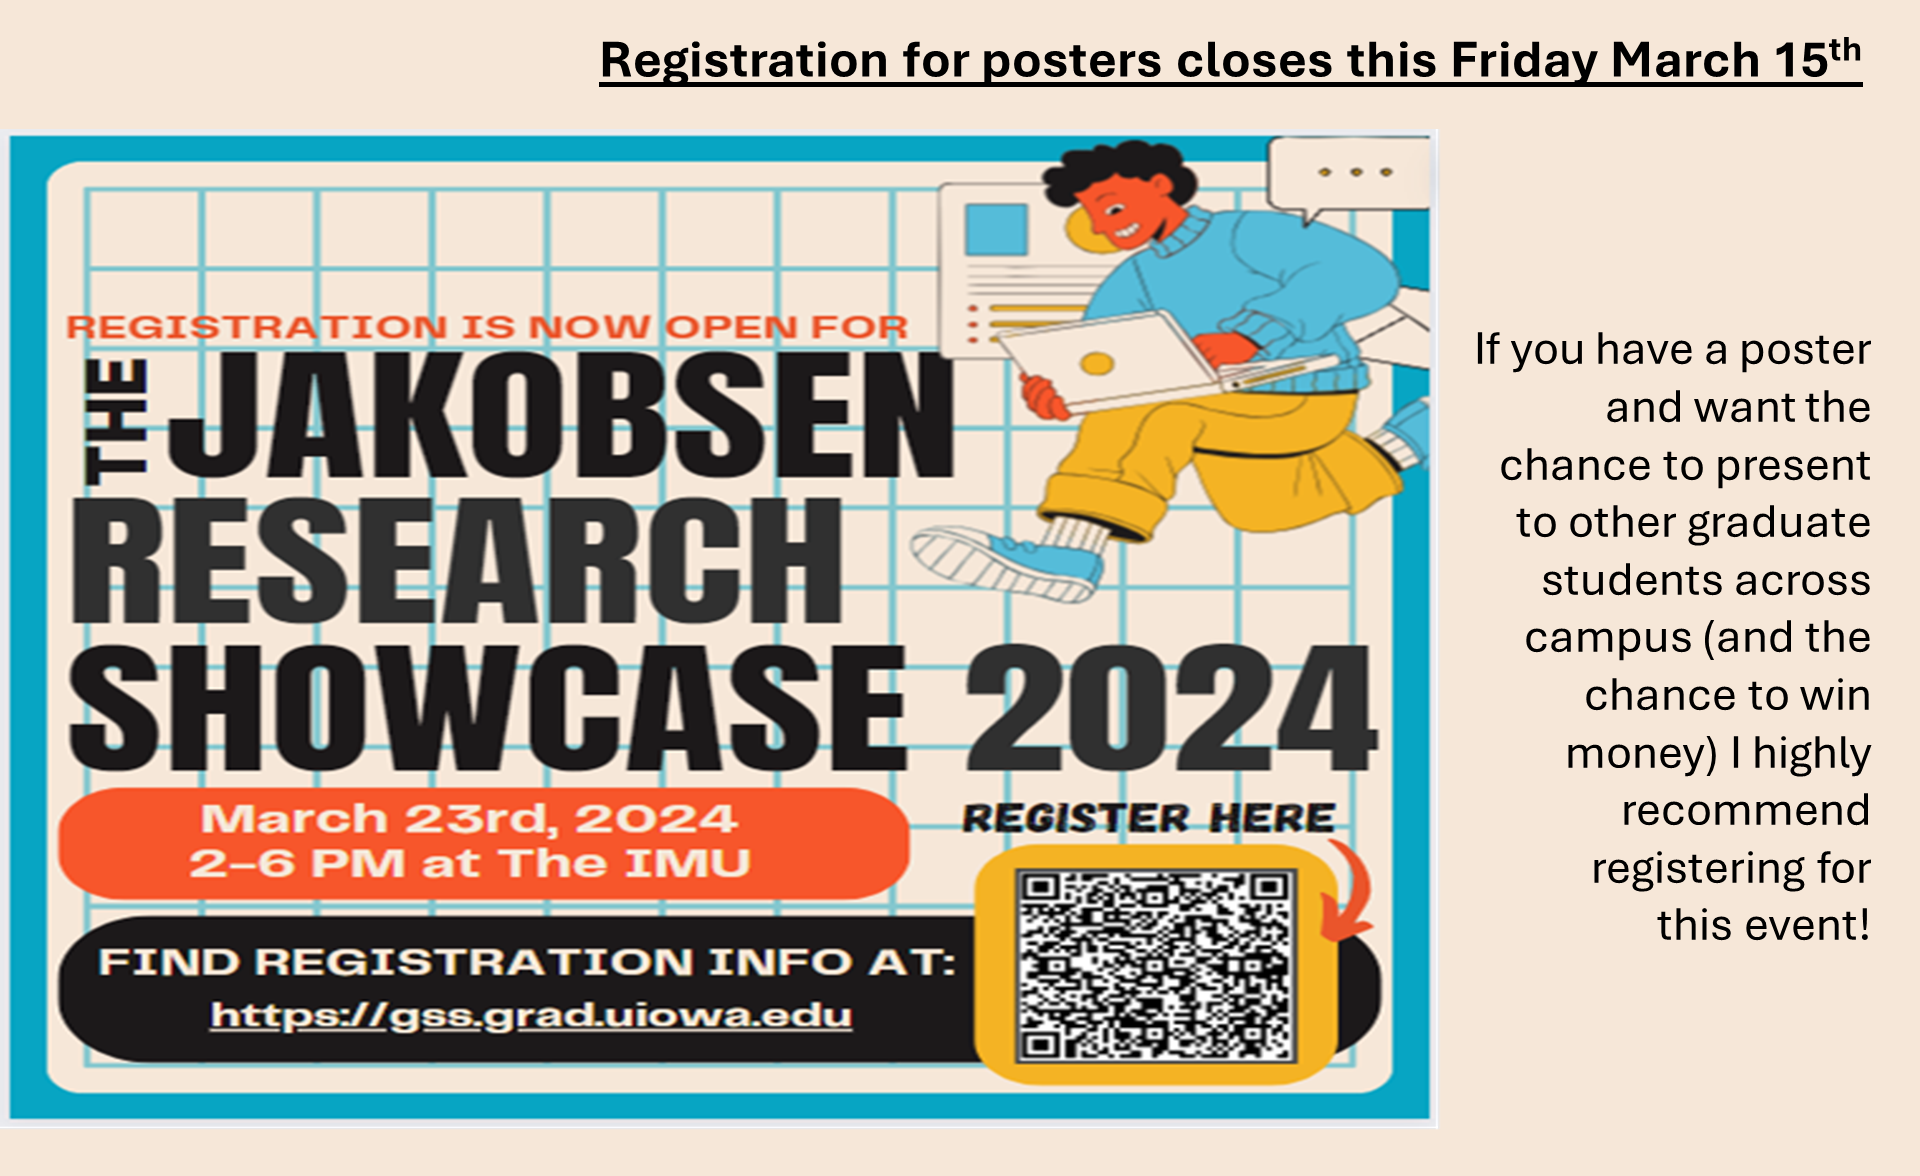 Jakobsen Research Showcase 2024 - Mar 23